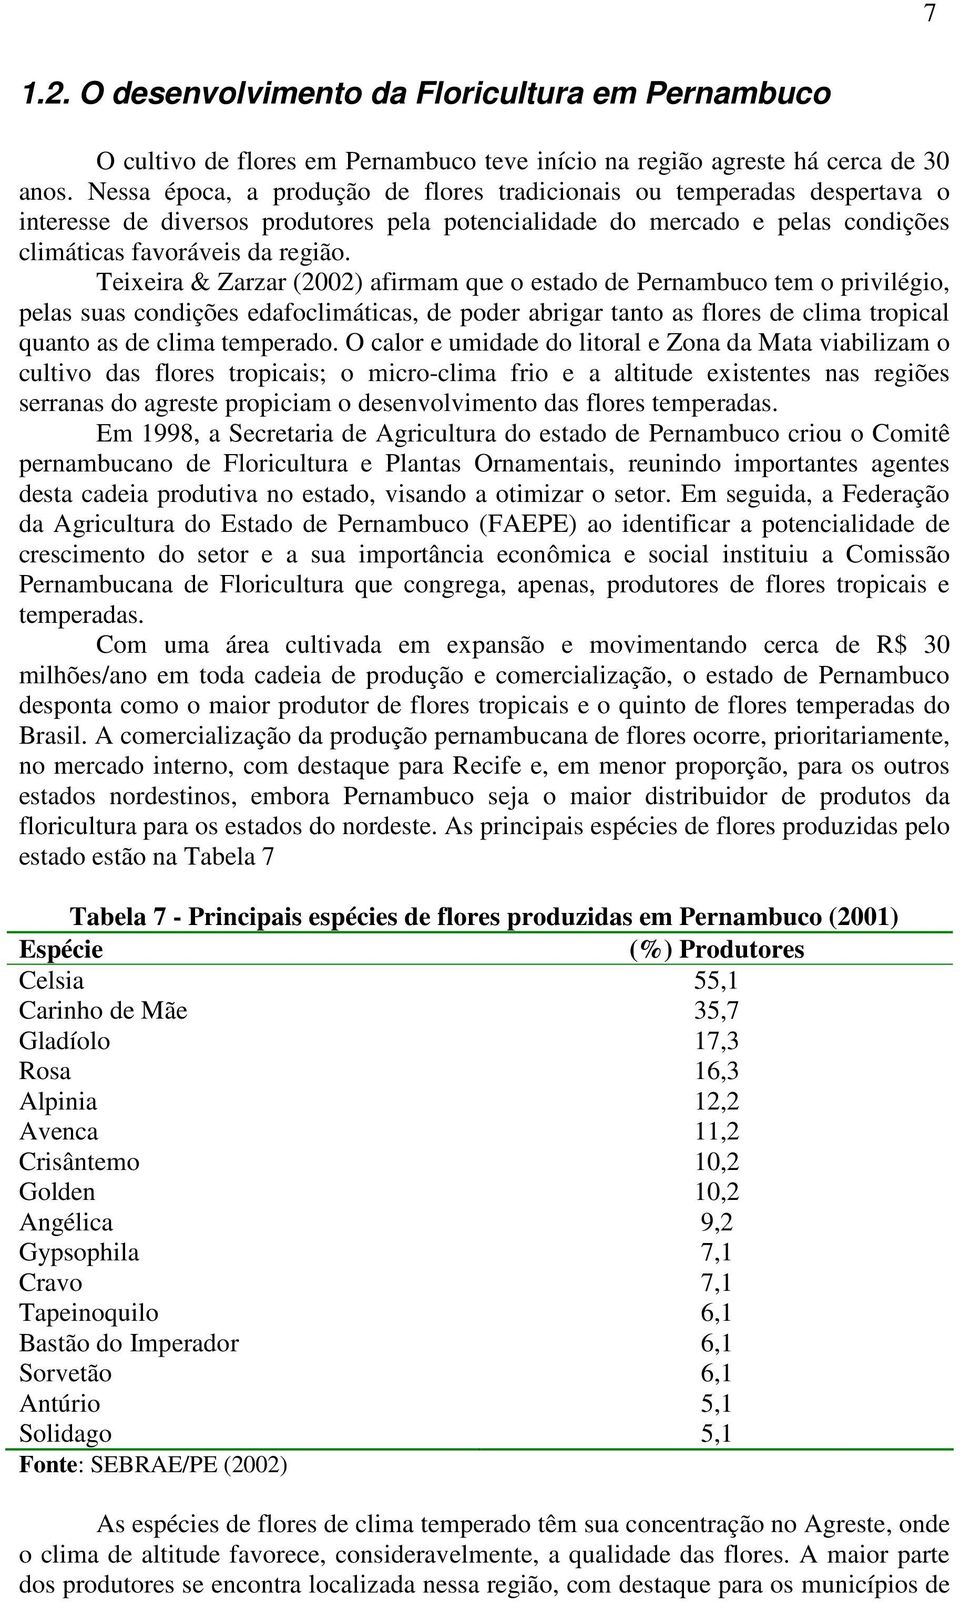 Teixeira & Zarzar (2002) afirmam que o estado de Pernambuco tem o privilégio, pelas suas condições edafoclimáticas, de poder abrigar tanto as flores de clima tropical quanto as de clima temperado.